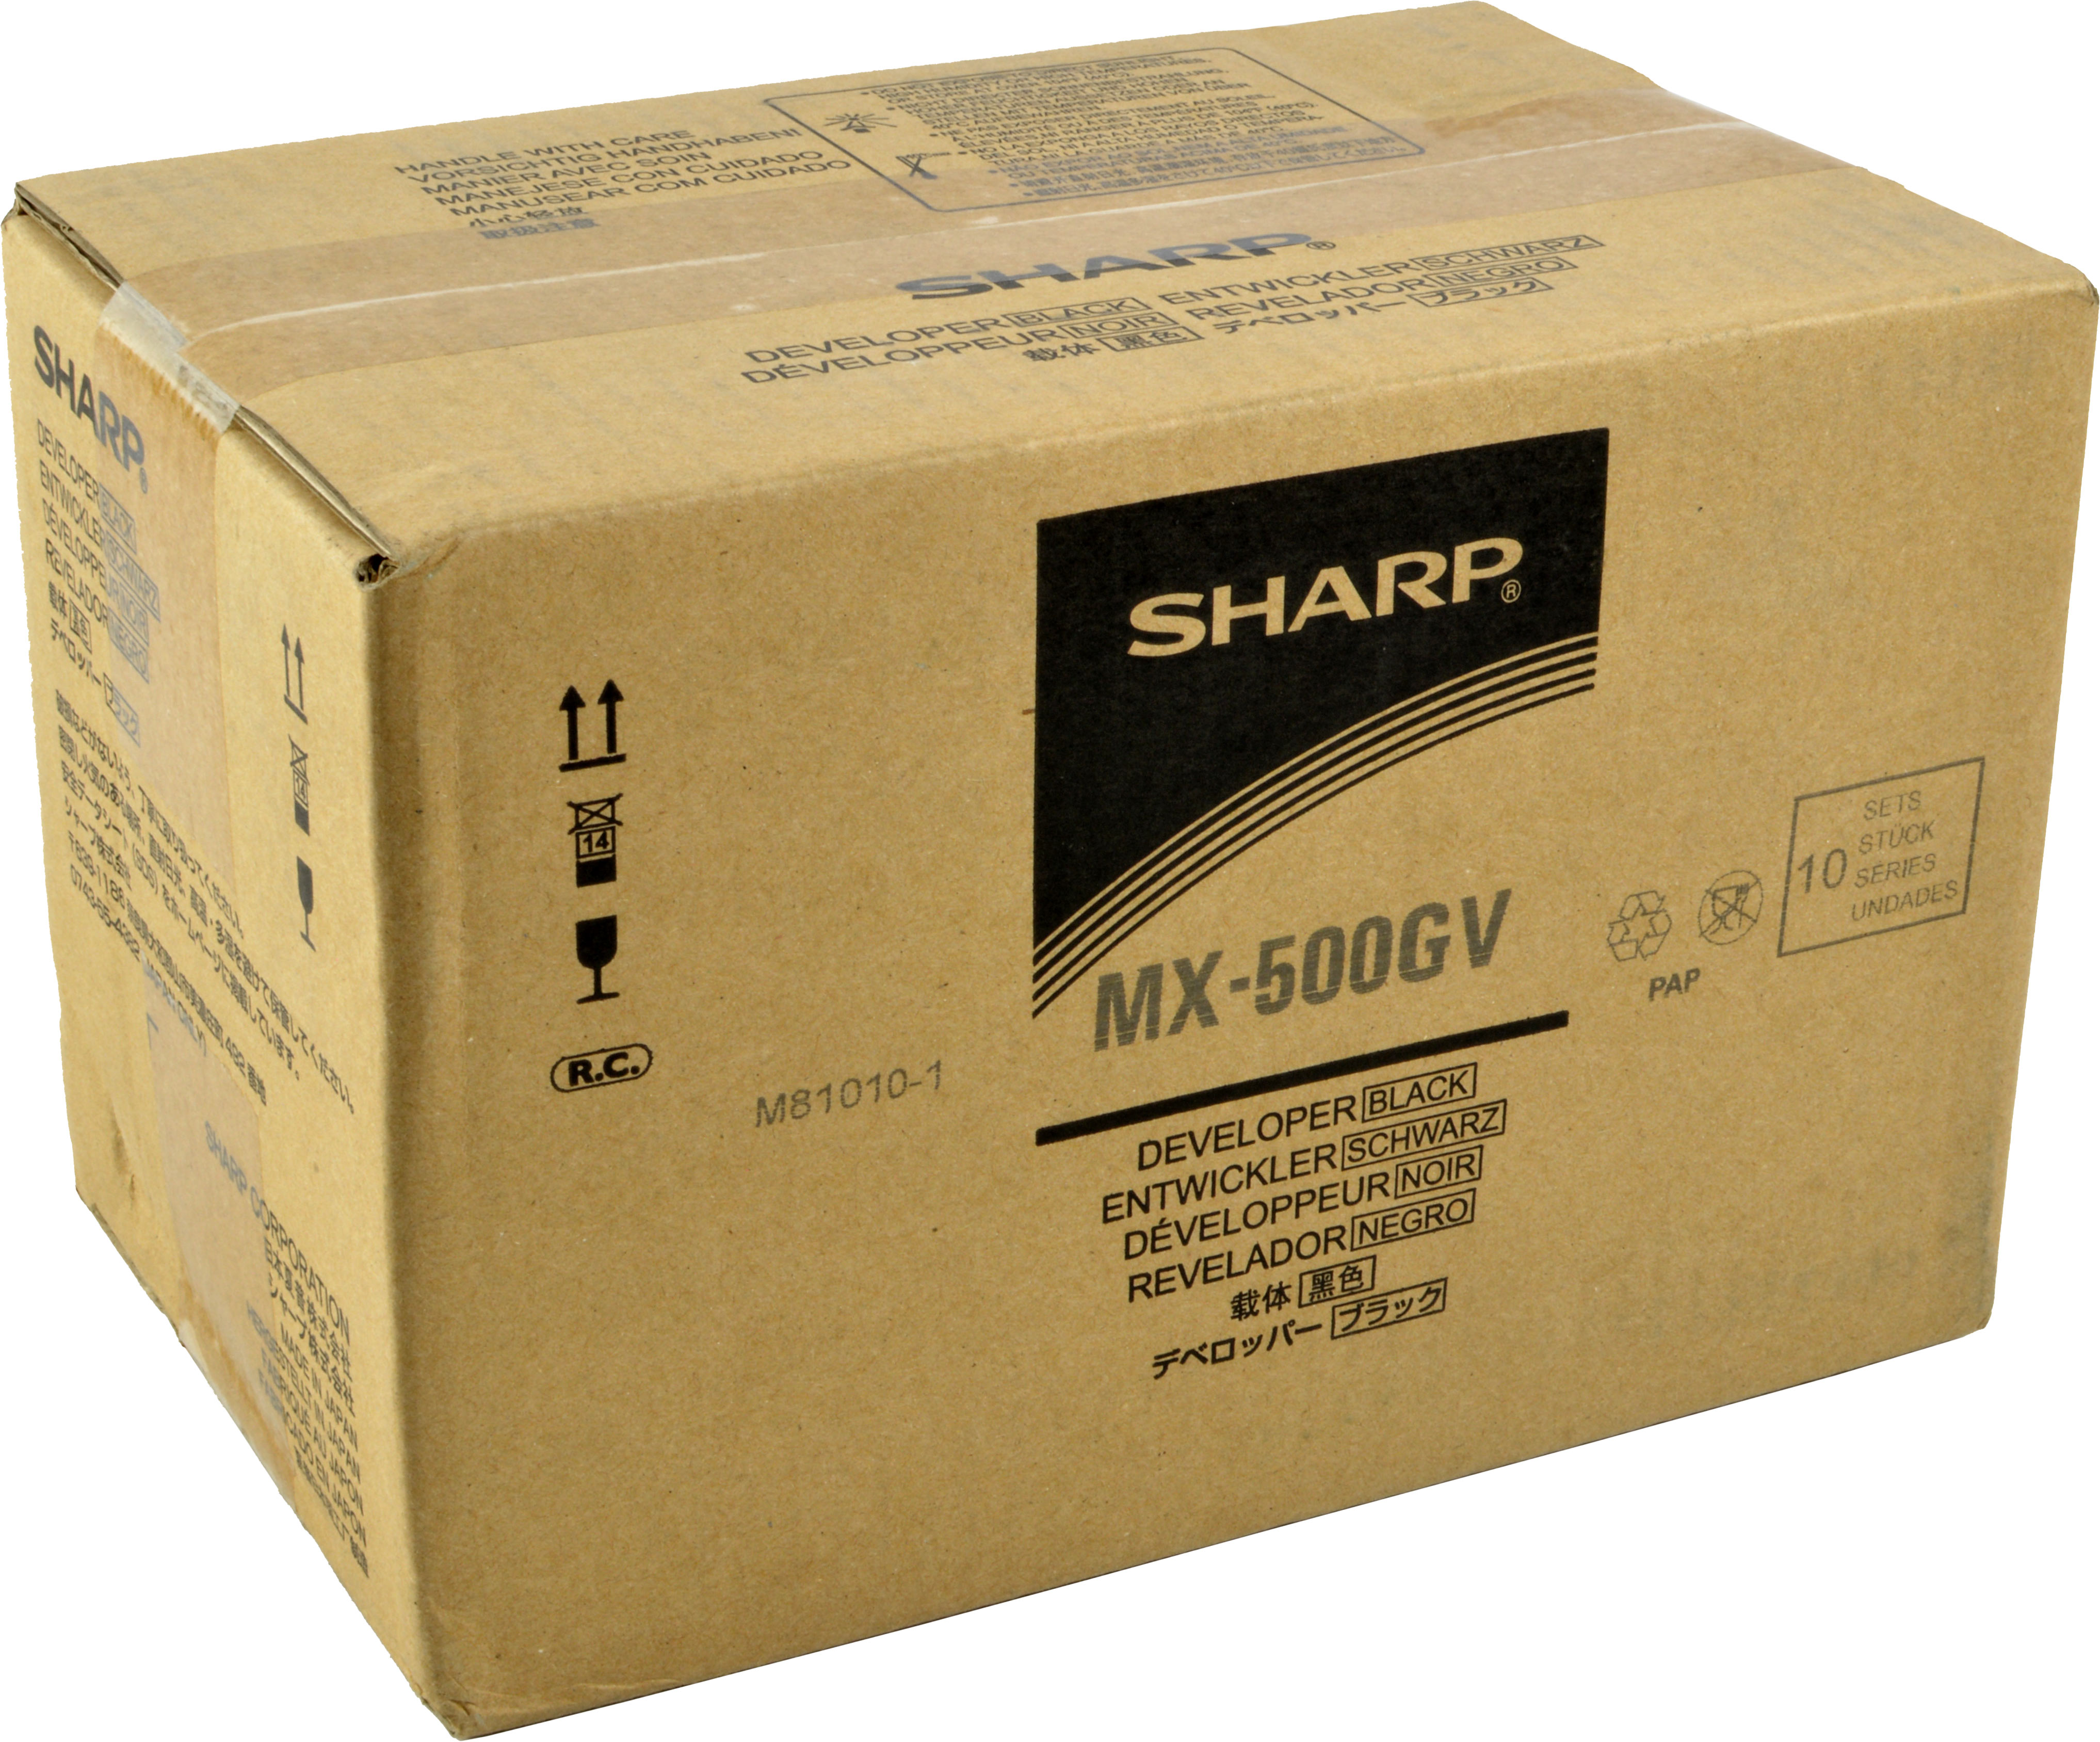 (MX-500GV) Zubehör SHARP schwarz MX-500GV